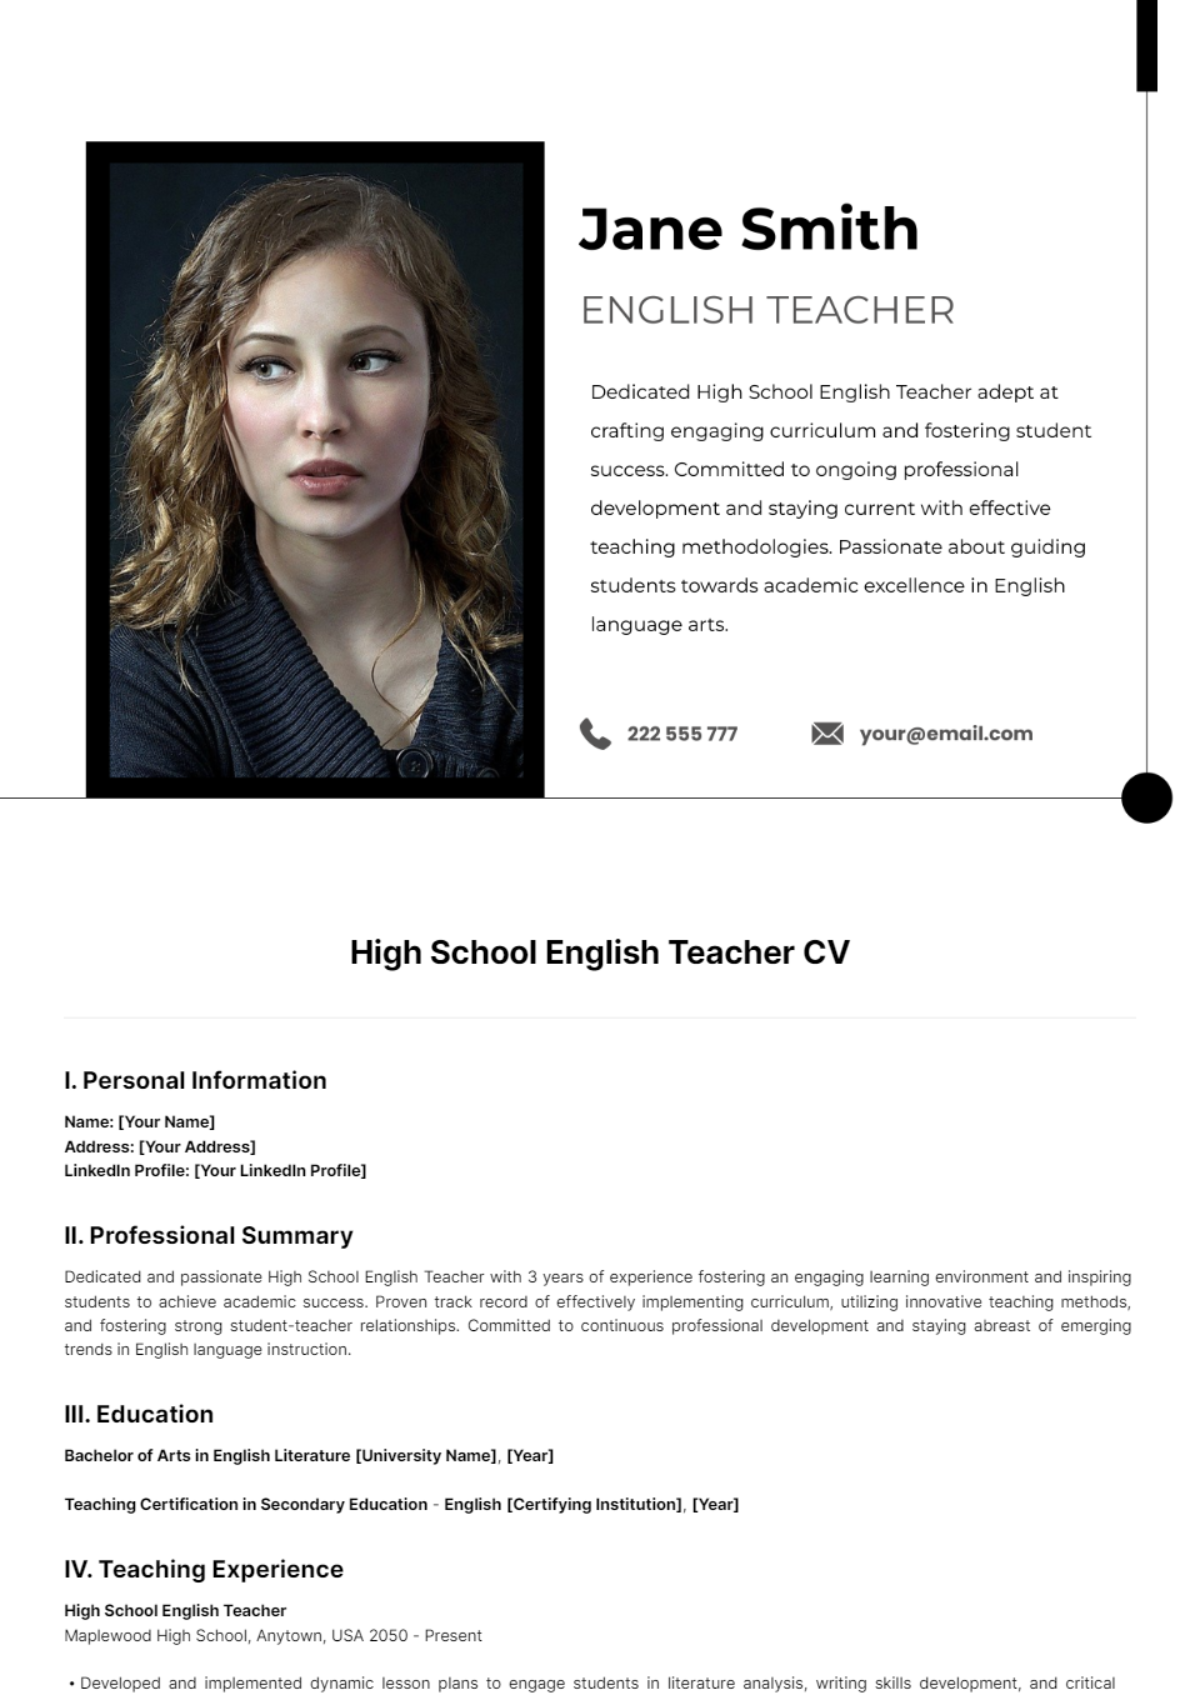 High School English Teacher CV Template